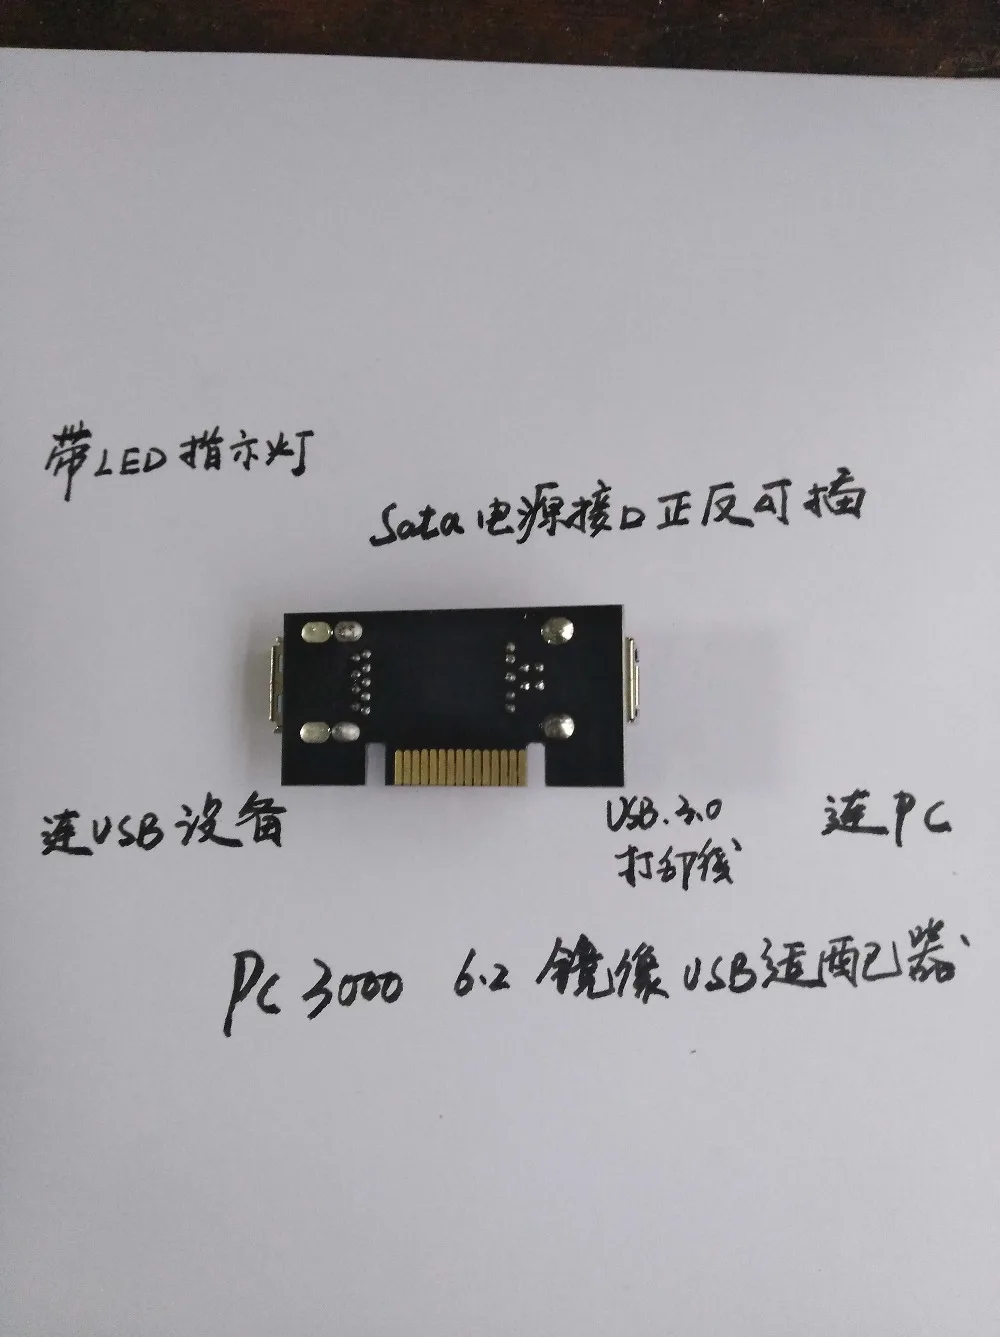 PC3000USB адаптер поддерживает PC30006.2 изображение плохой путь U диск SD карты памяти и другие usb-устройства для восстановления